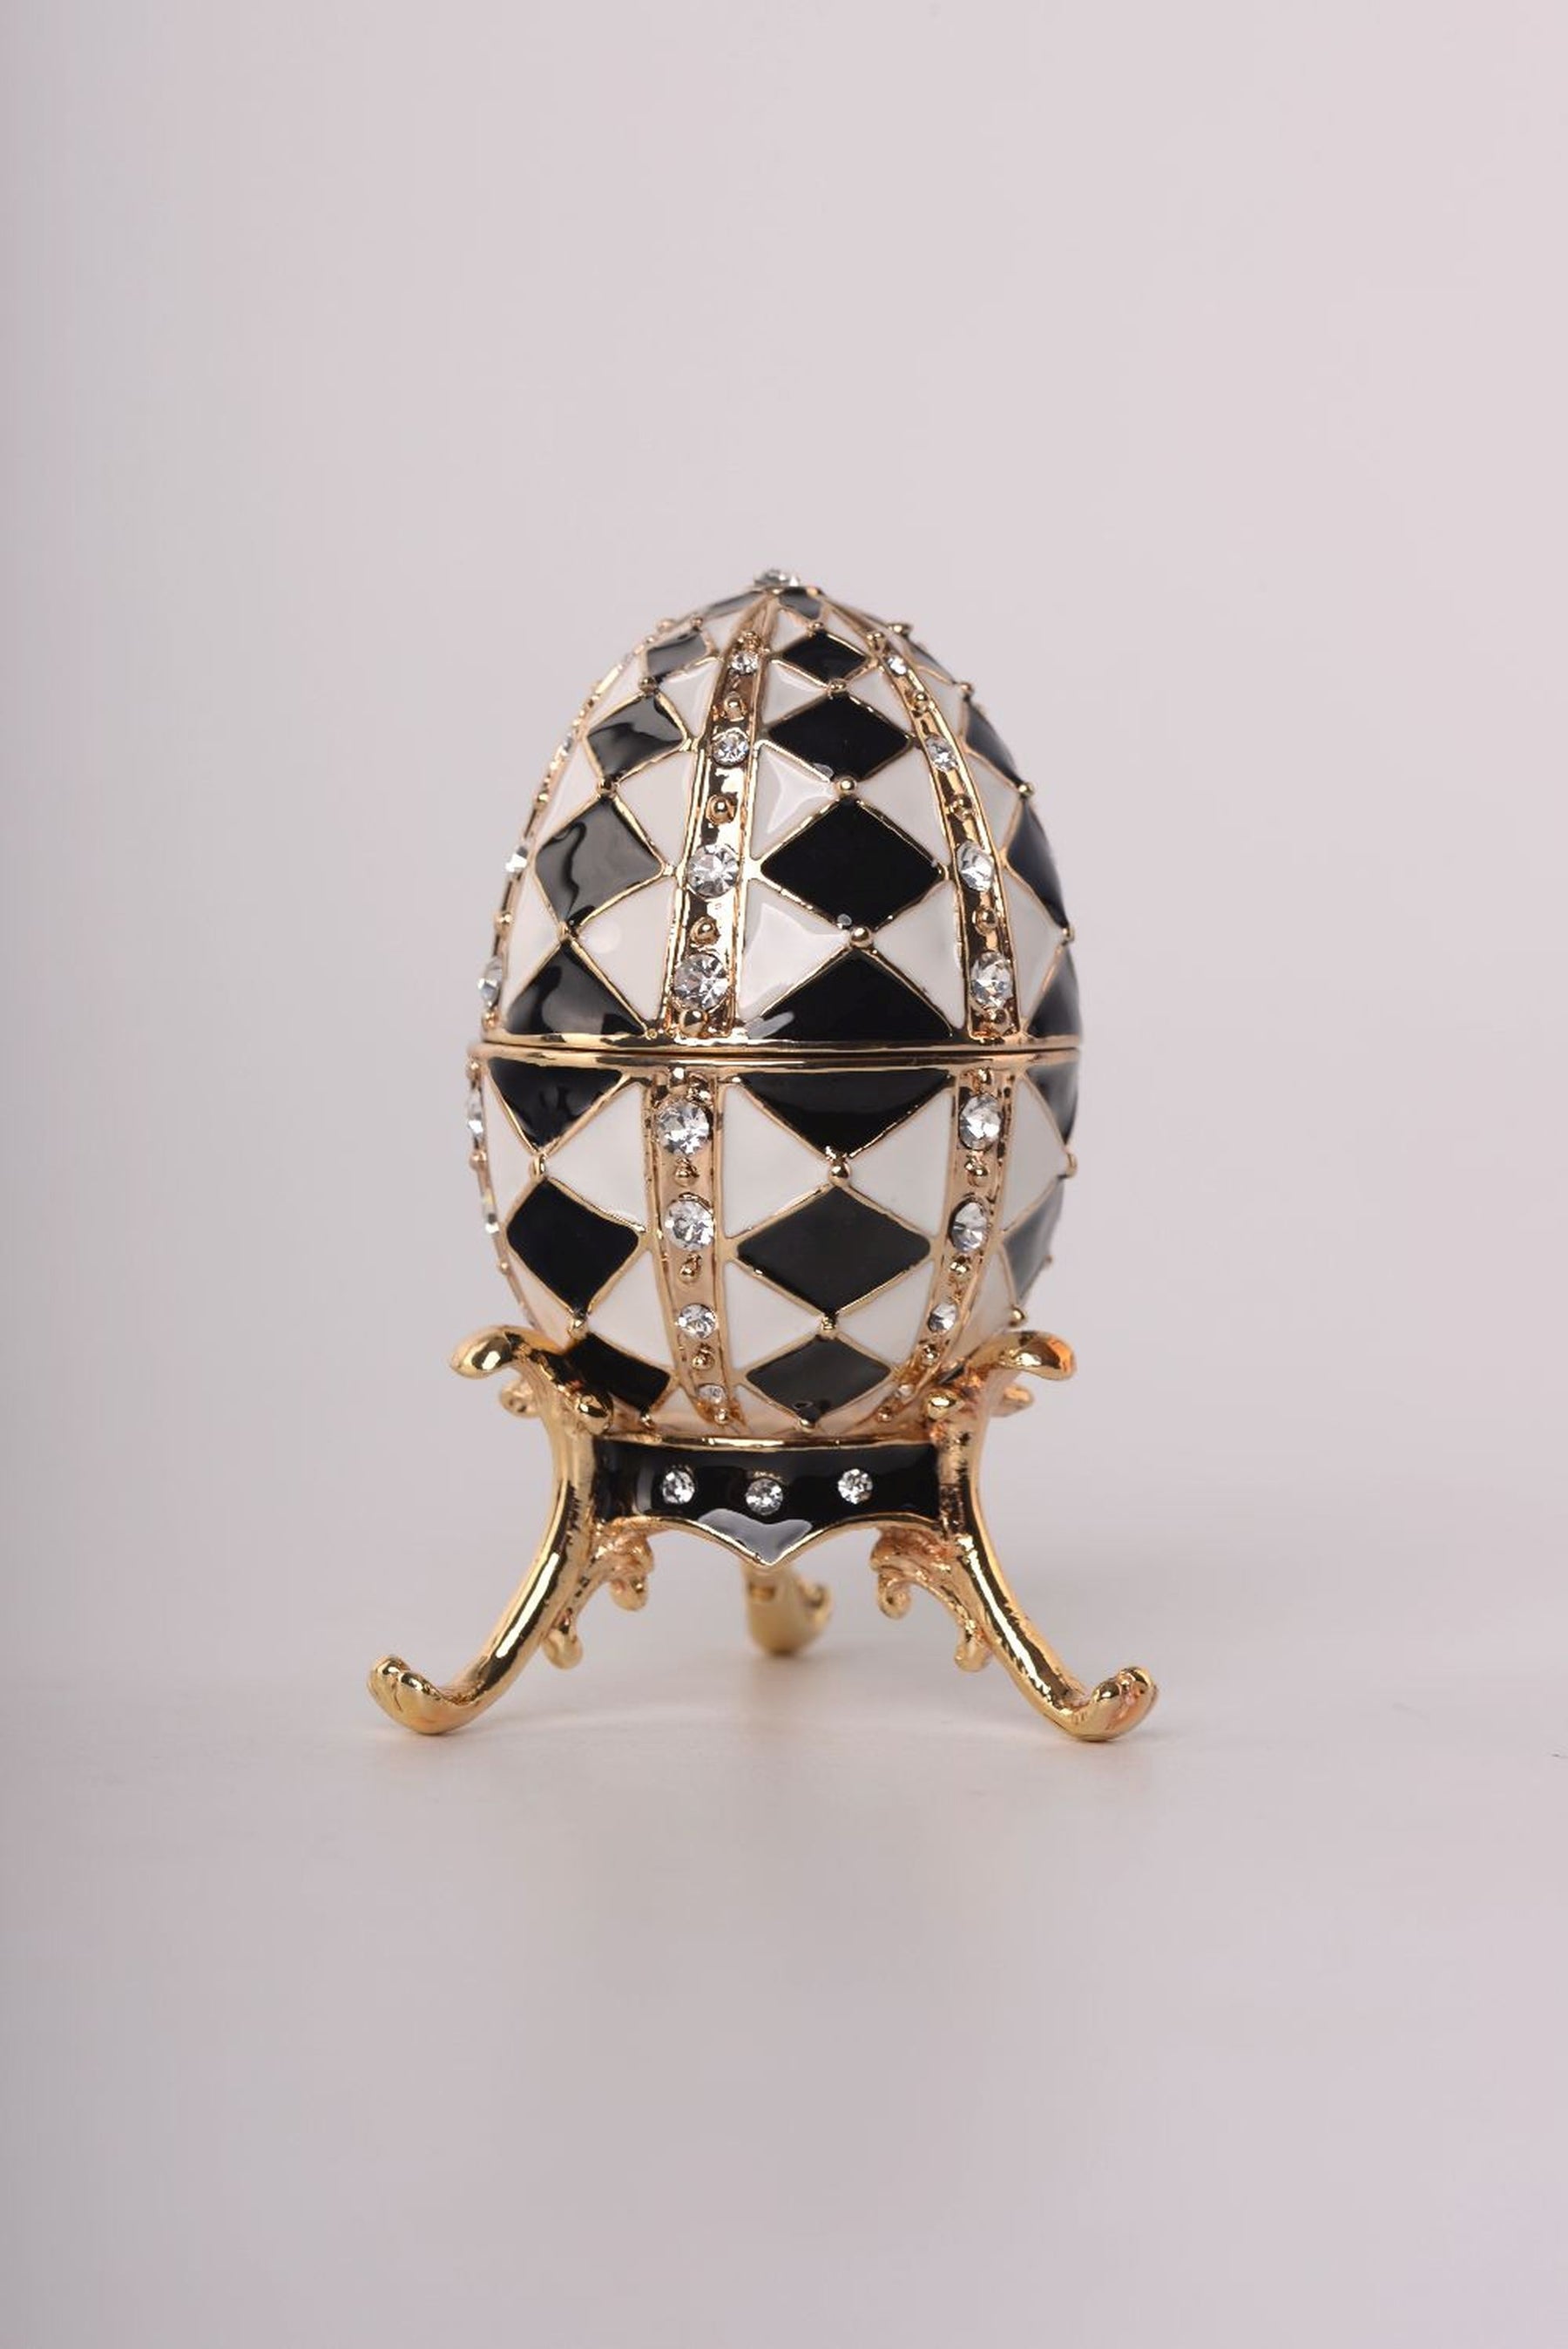 Schwarz-weißes Fabergé-Ei mit goldener Halskette im Inneren